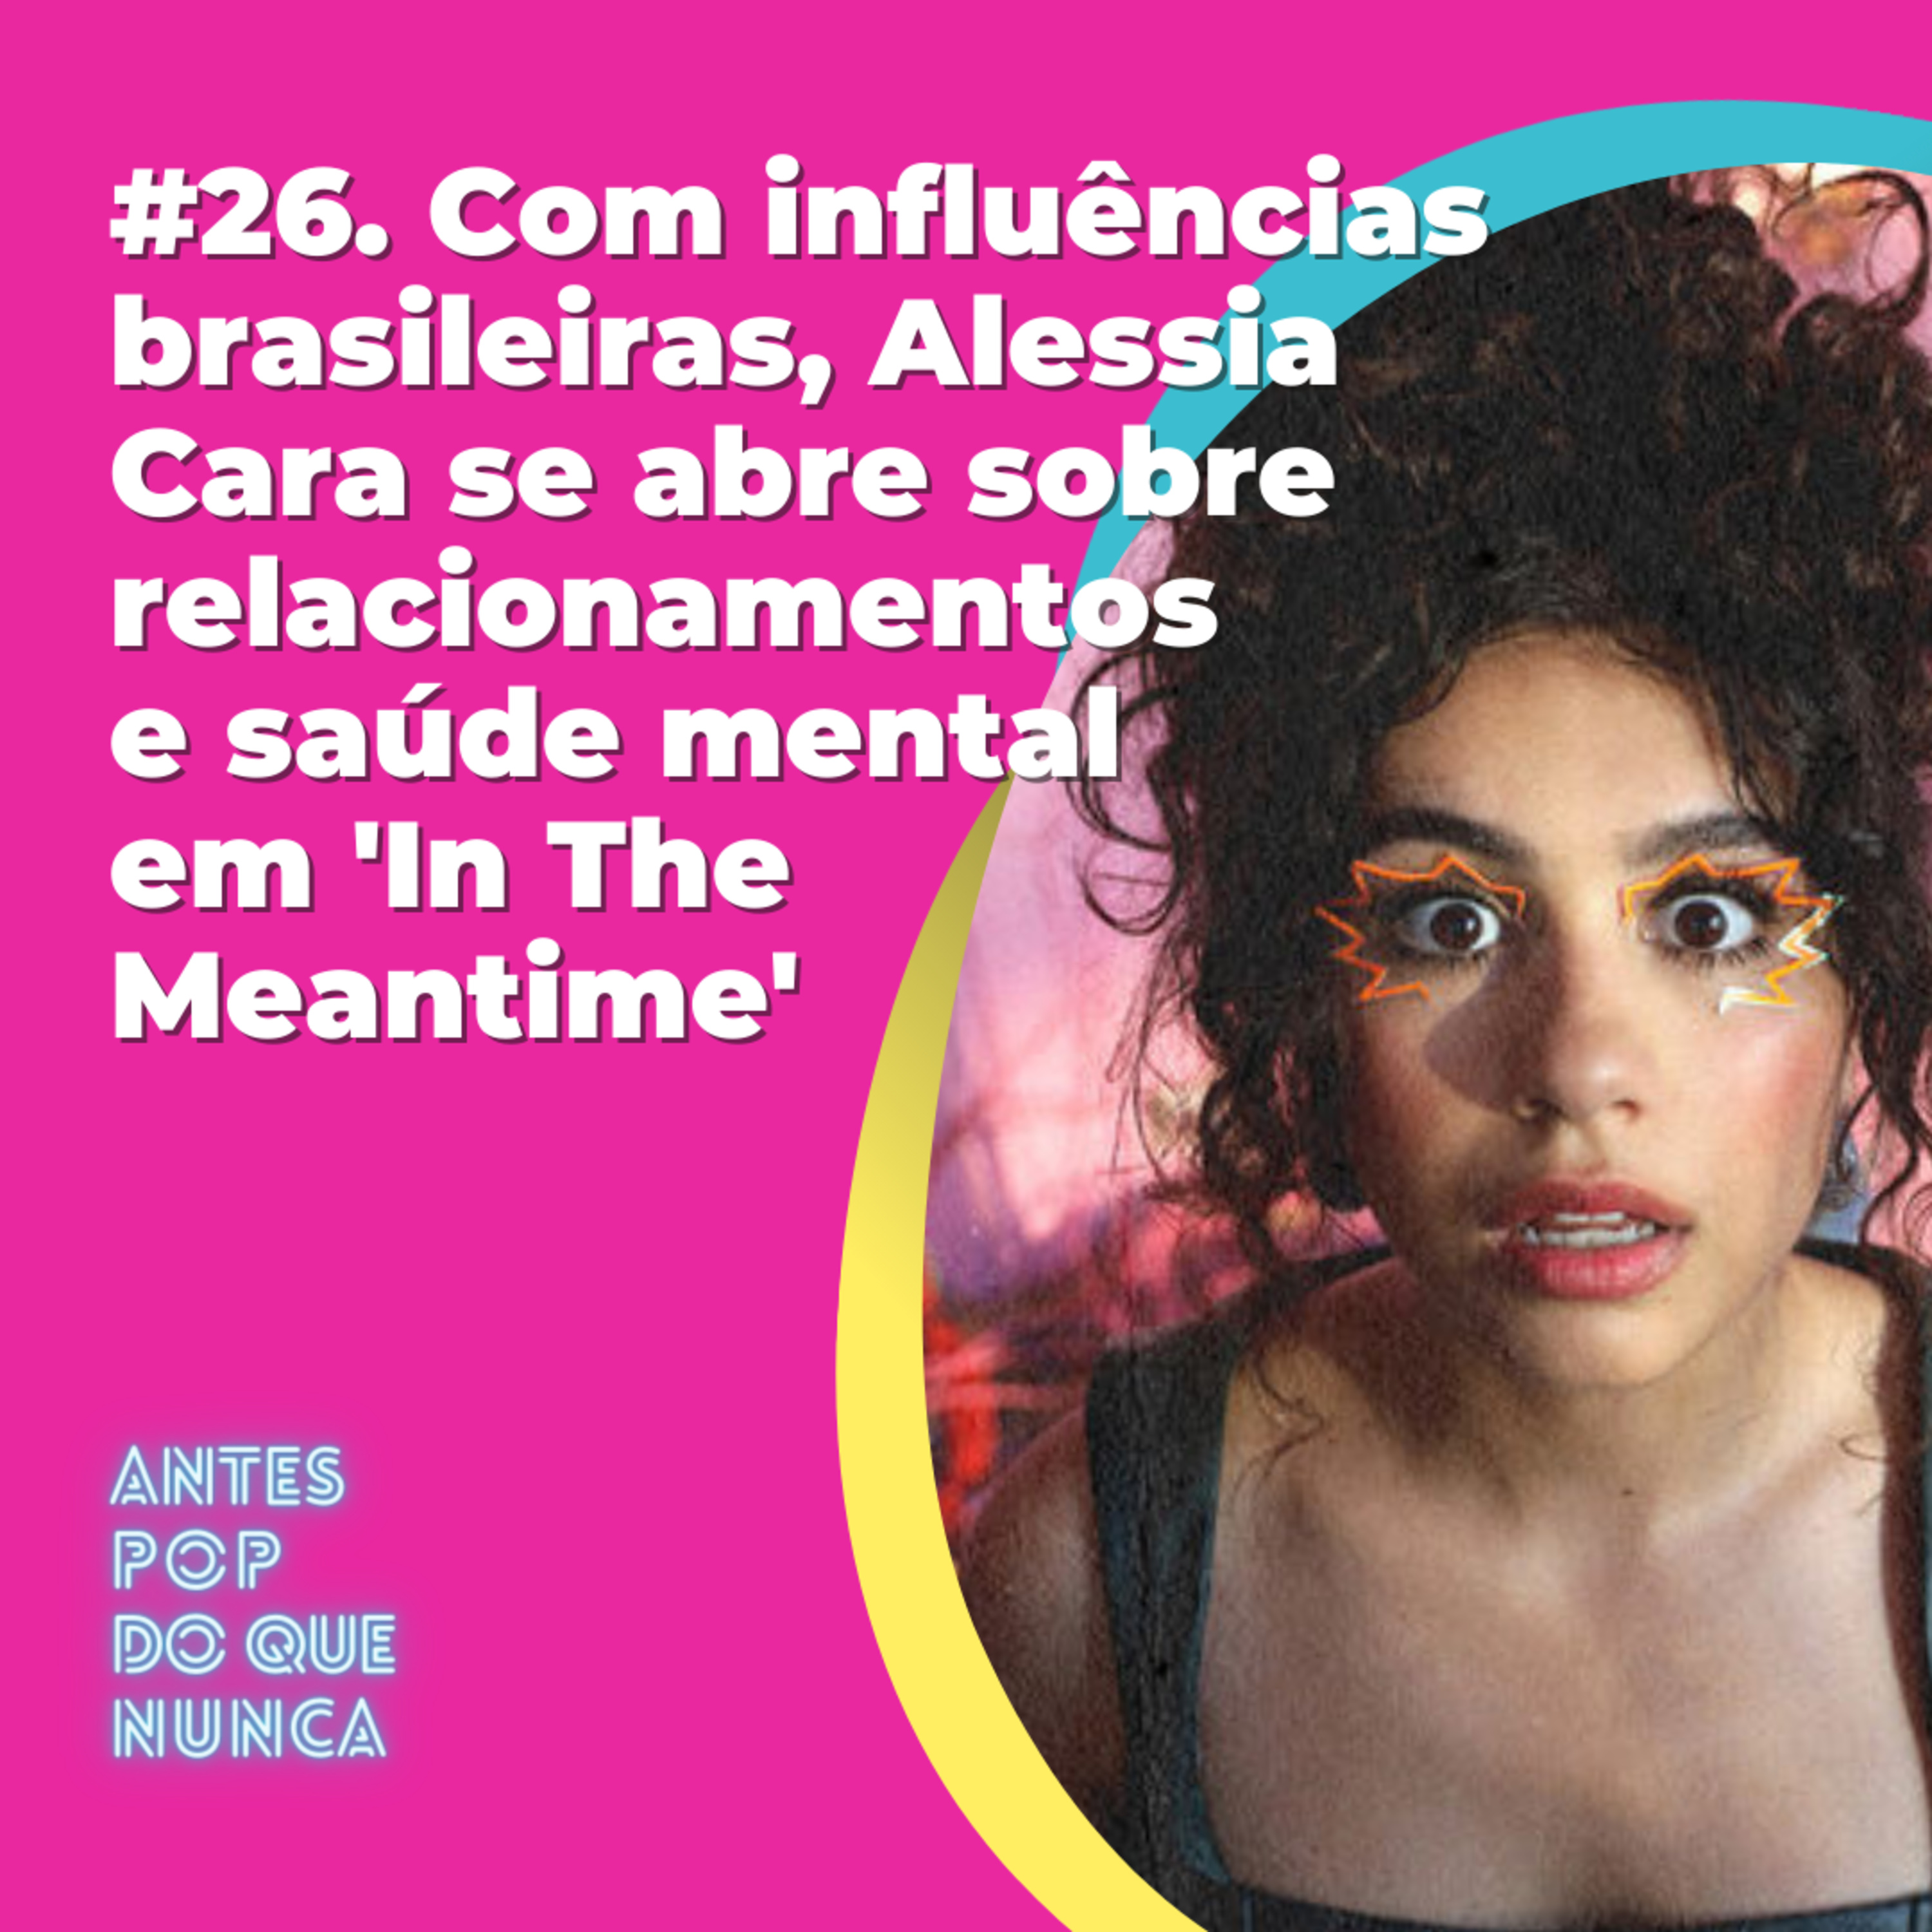 #26. Com influências brasileiras, Alessia Cara se abre sobre relacionamentos e saúde mental em 'In The Meantime'